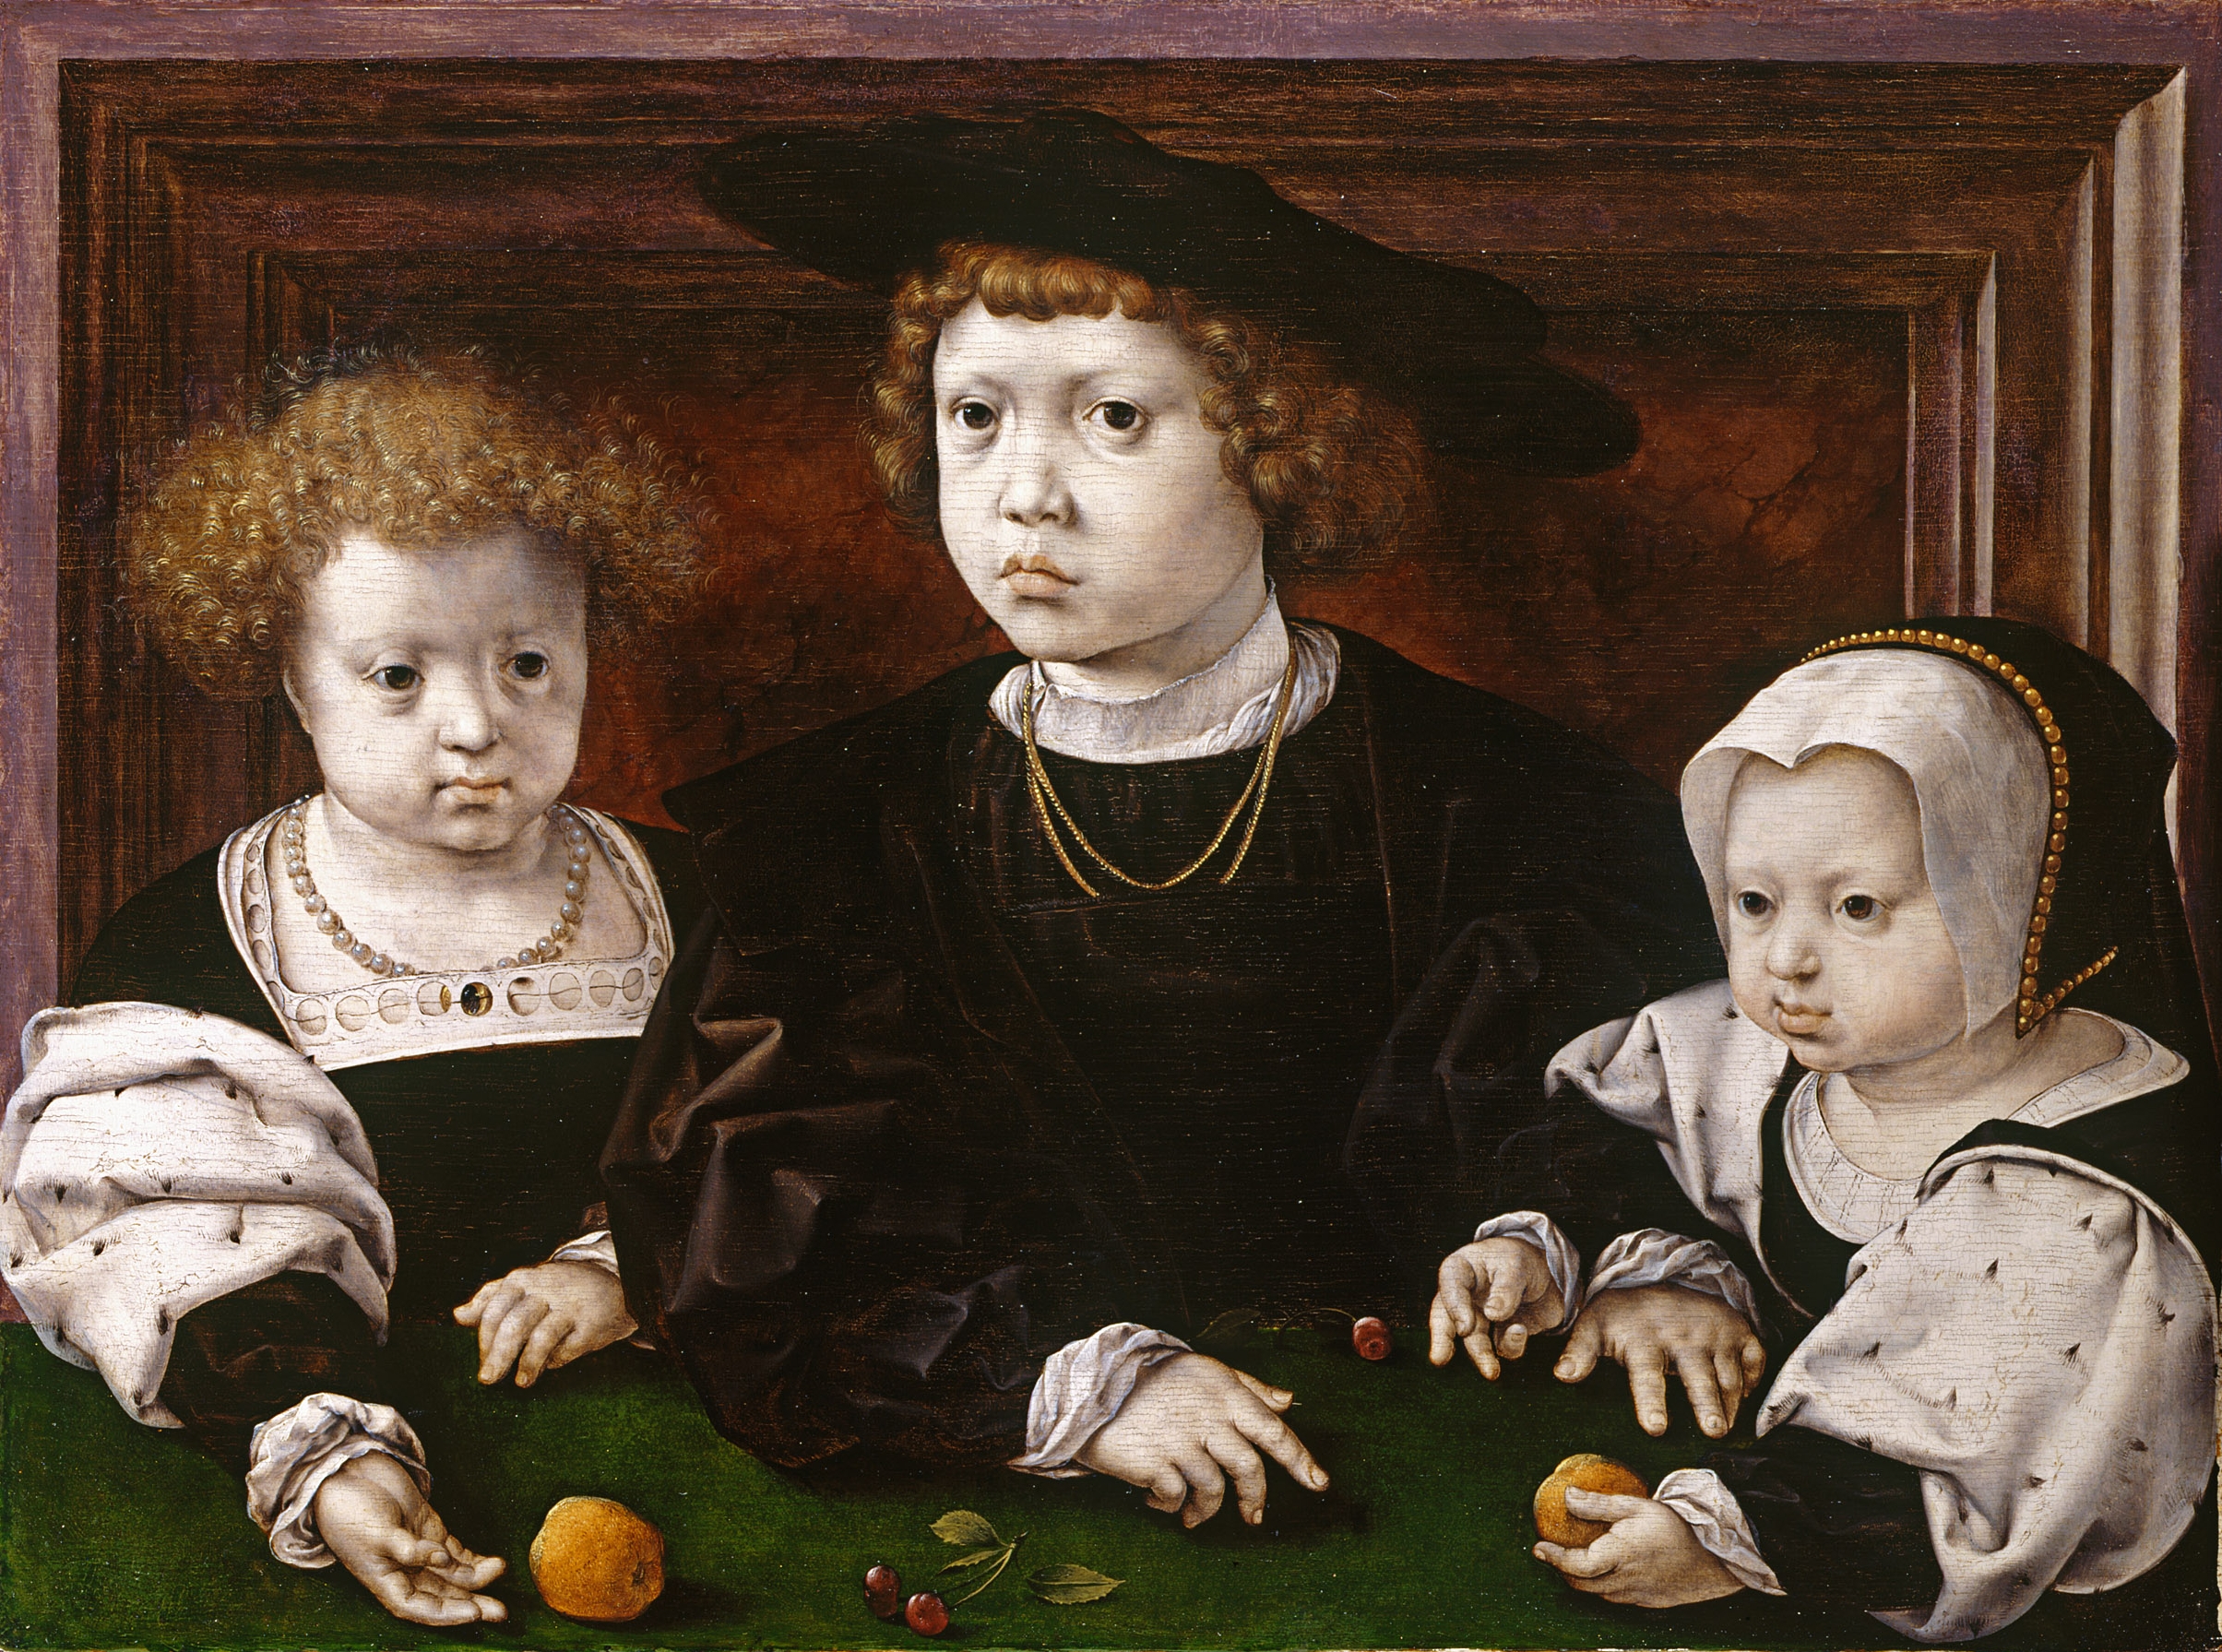 Three children of King Christian II of Denmark by Jan Gossaert (1526)